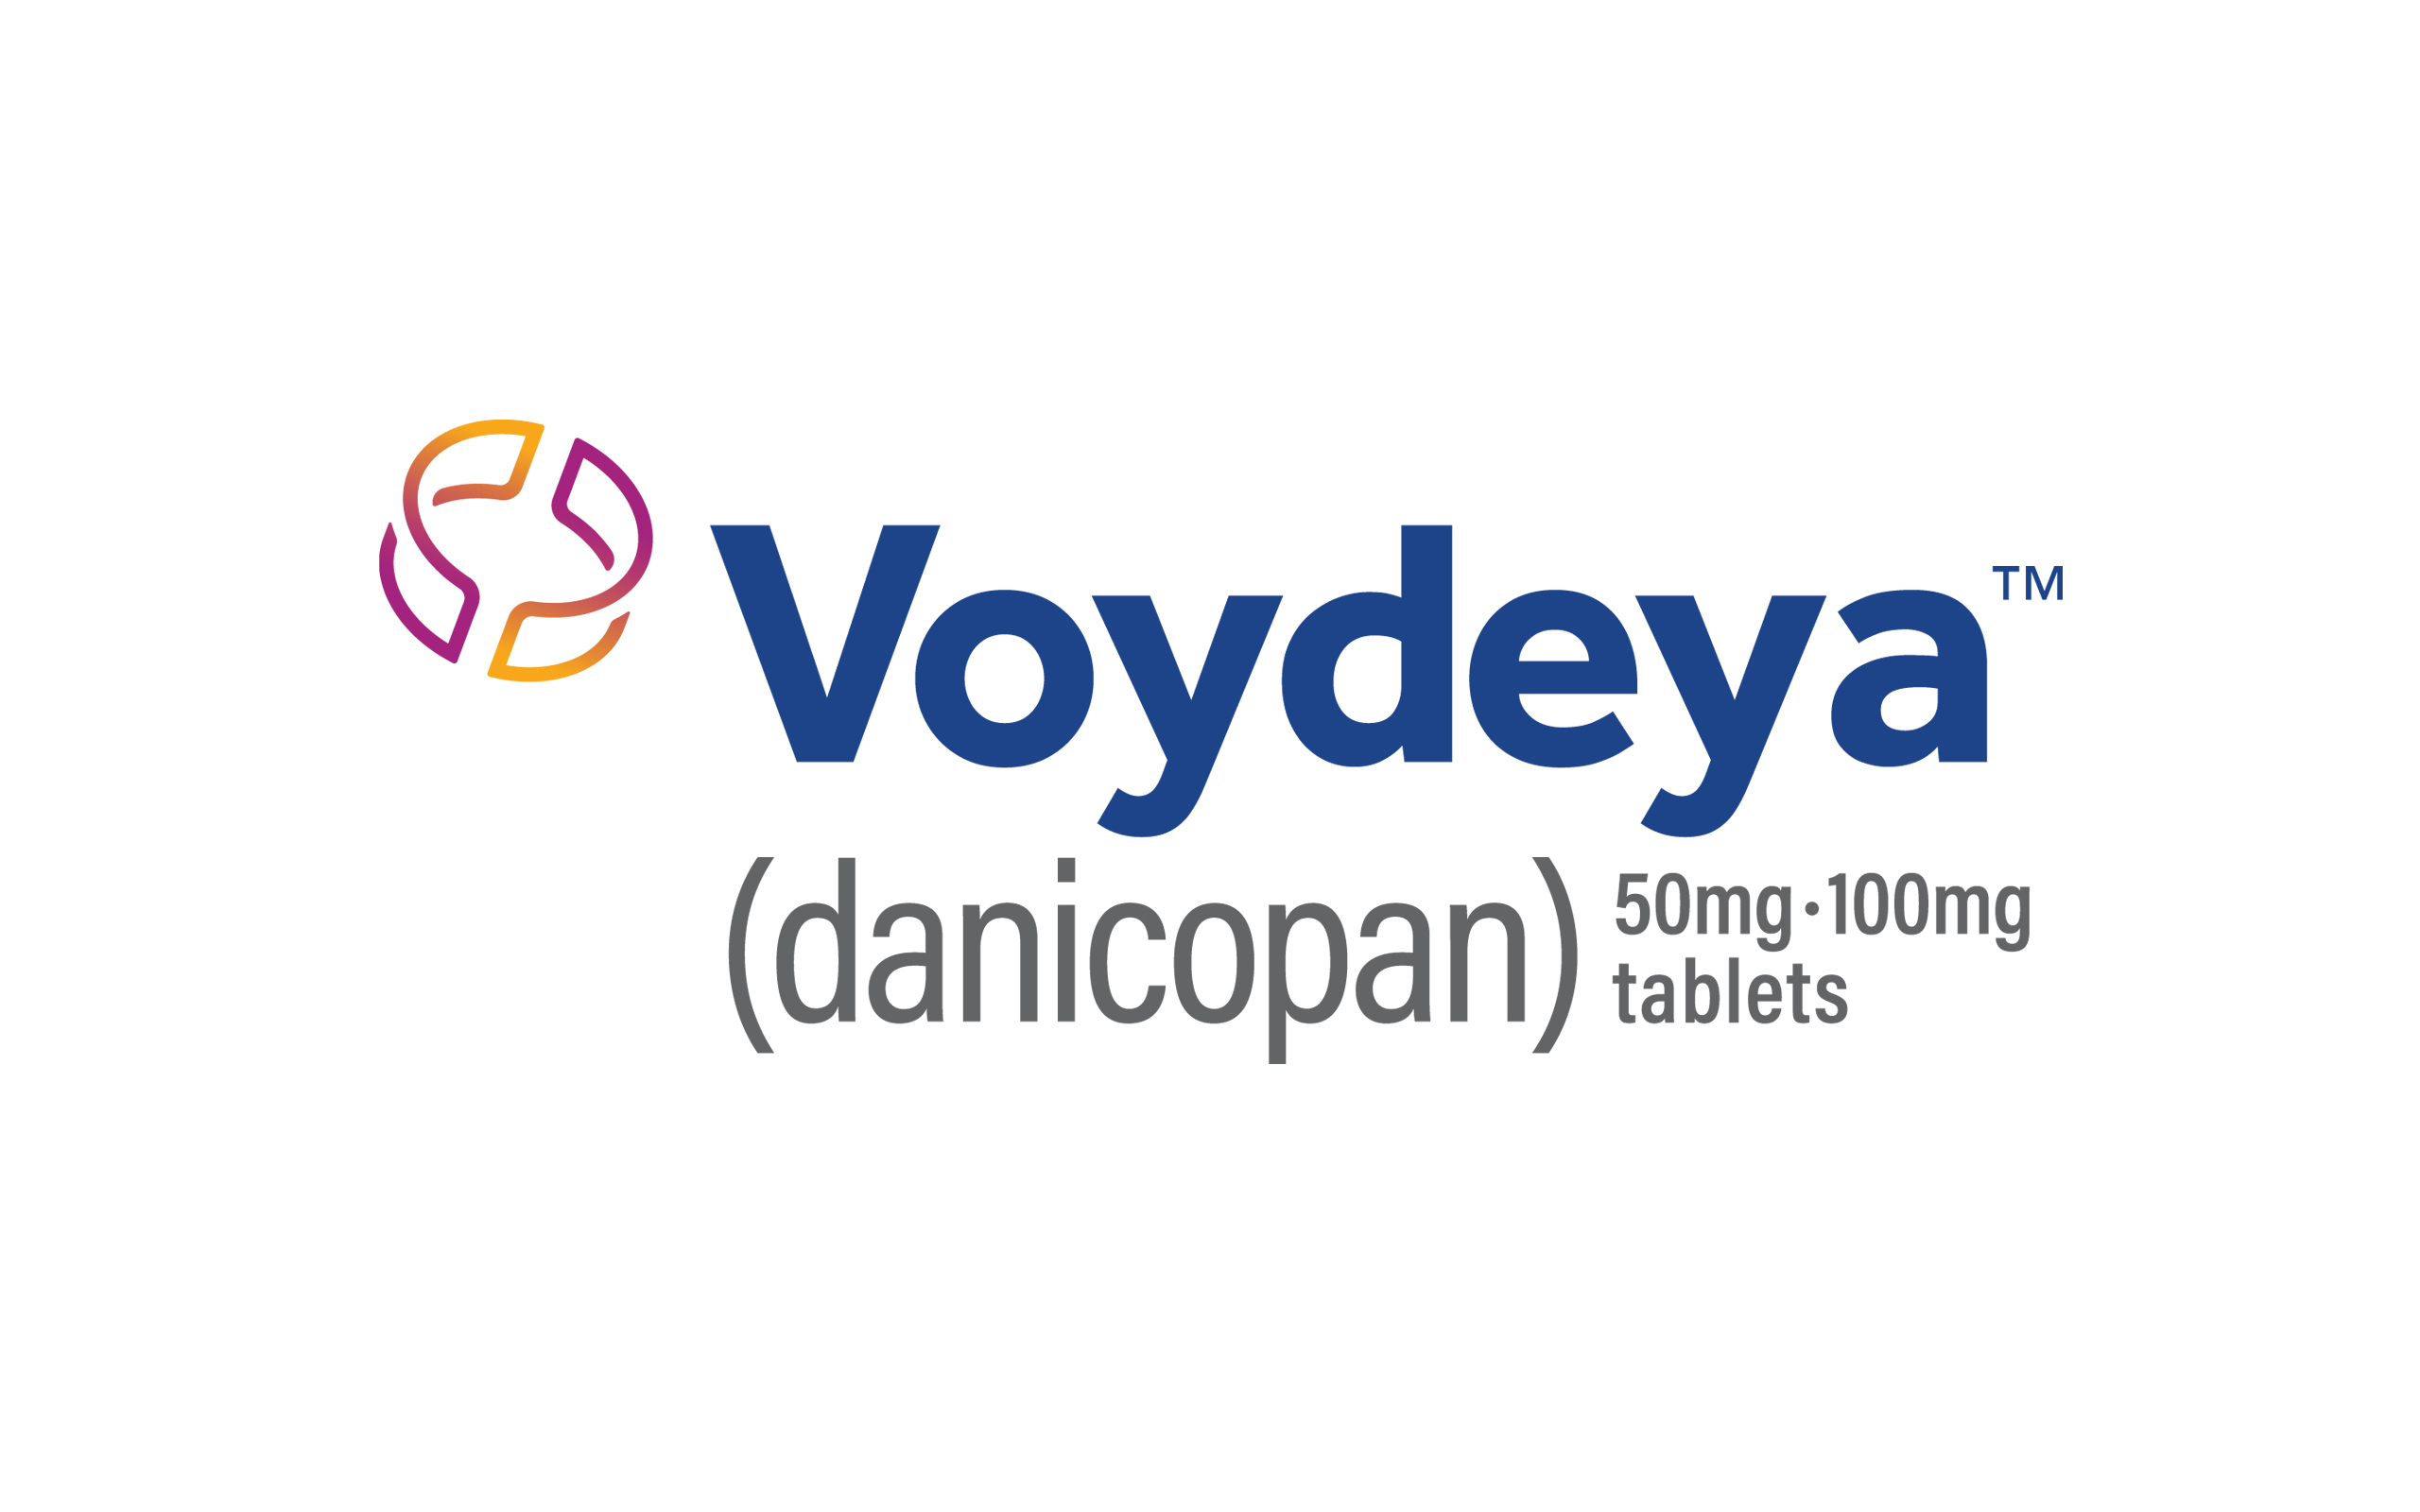 Voydeya Logo